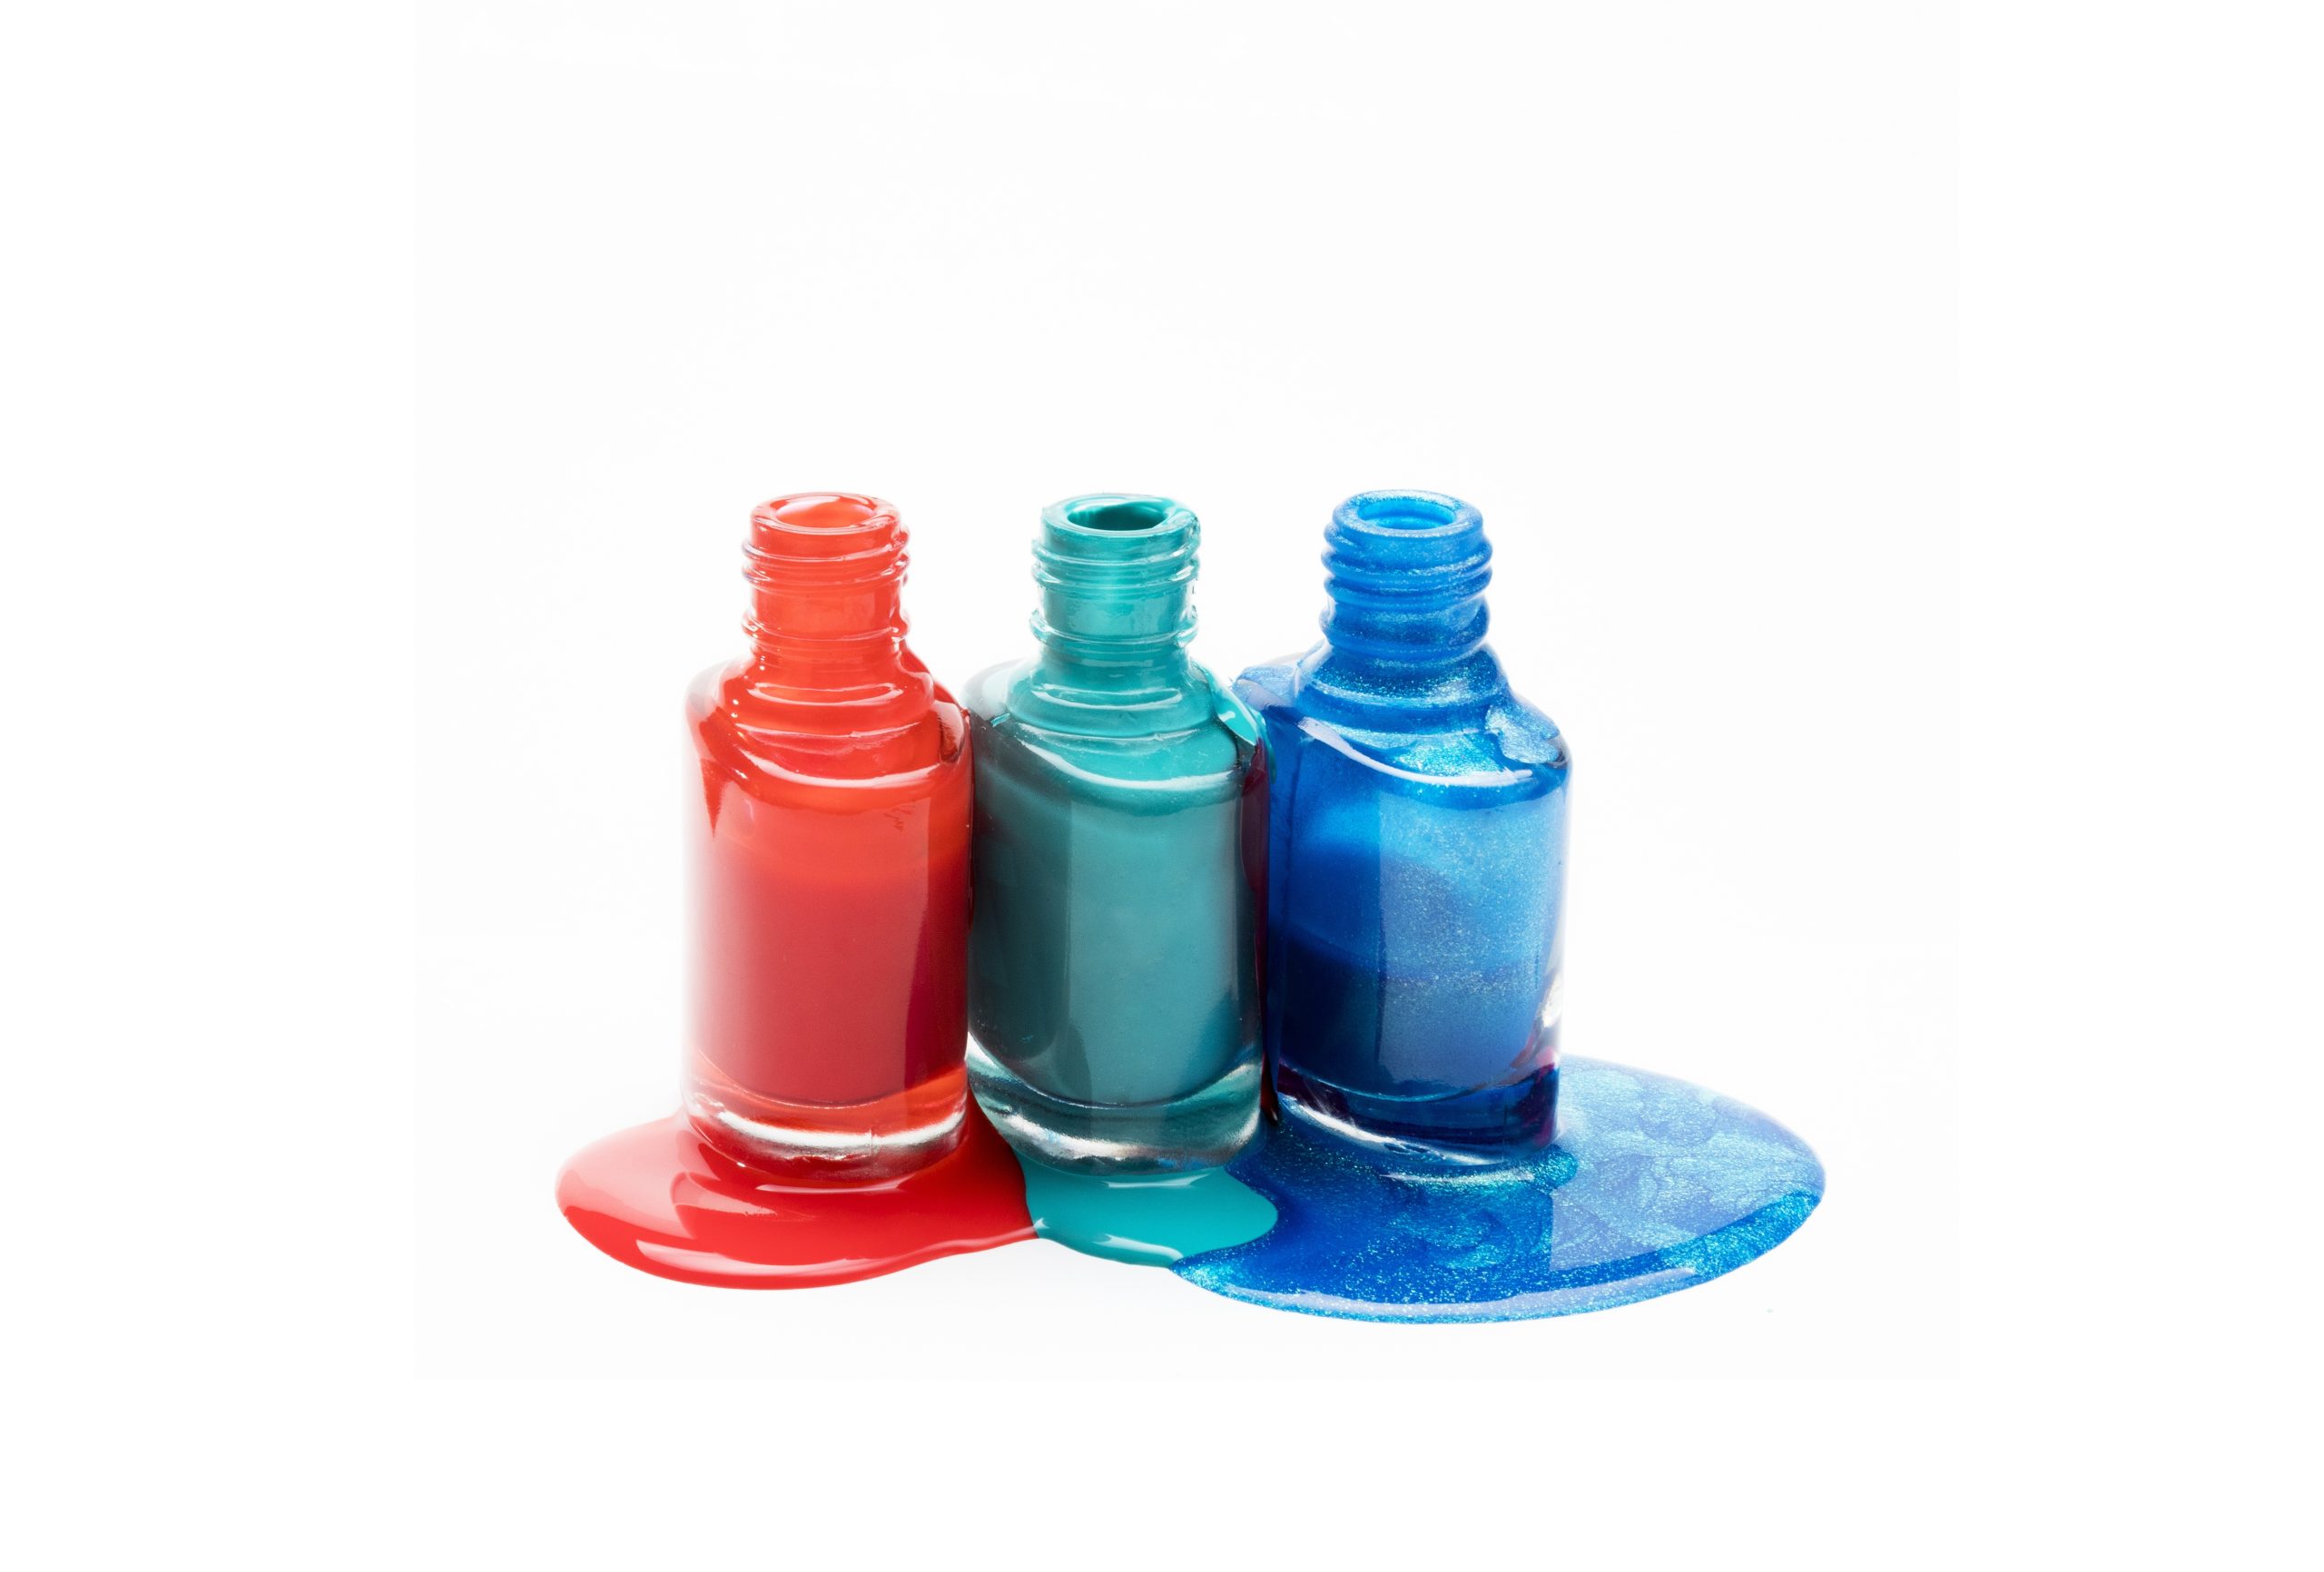 vidros de esmalte nas cores laranja, verde e azull abertos com liquido derramado em seu entorno